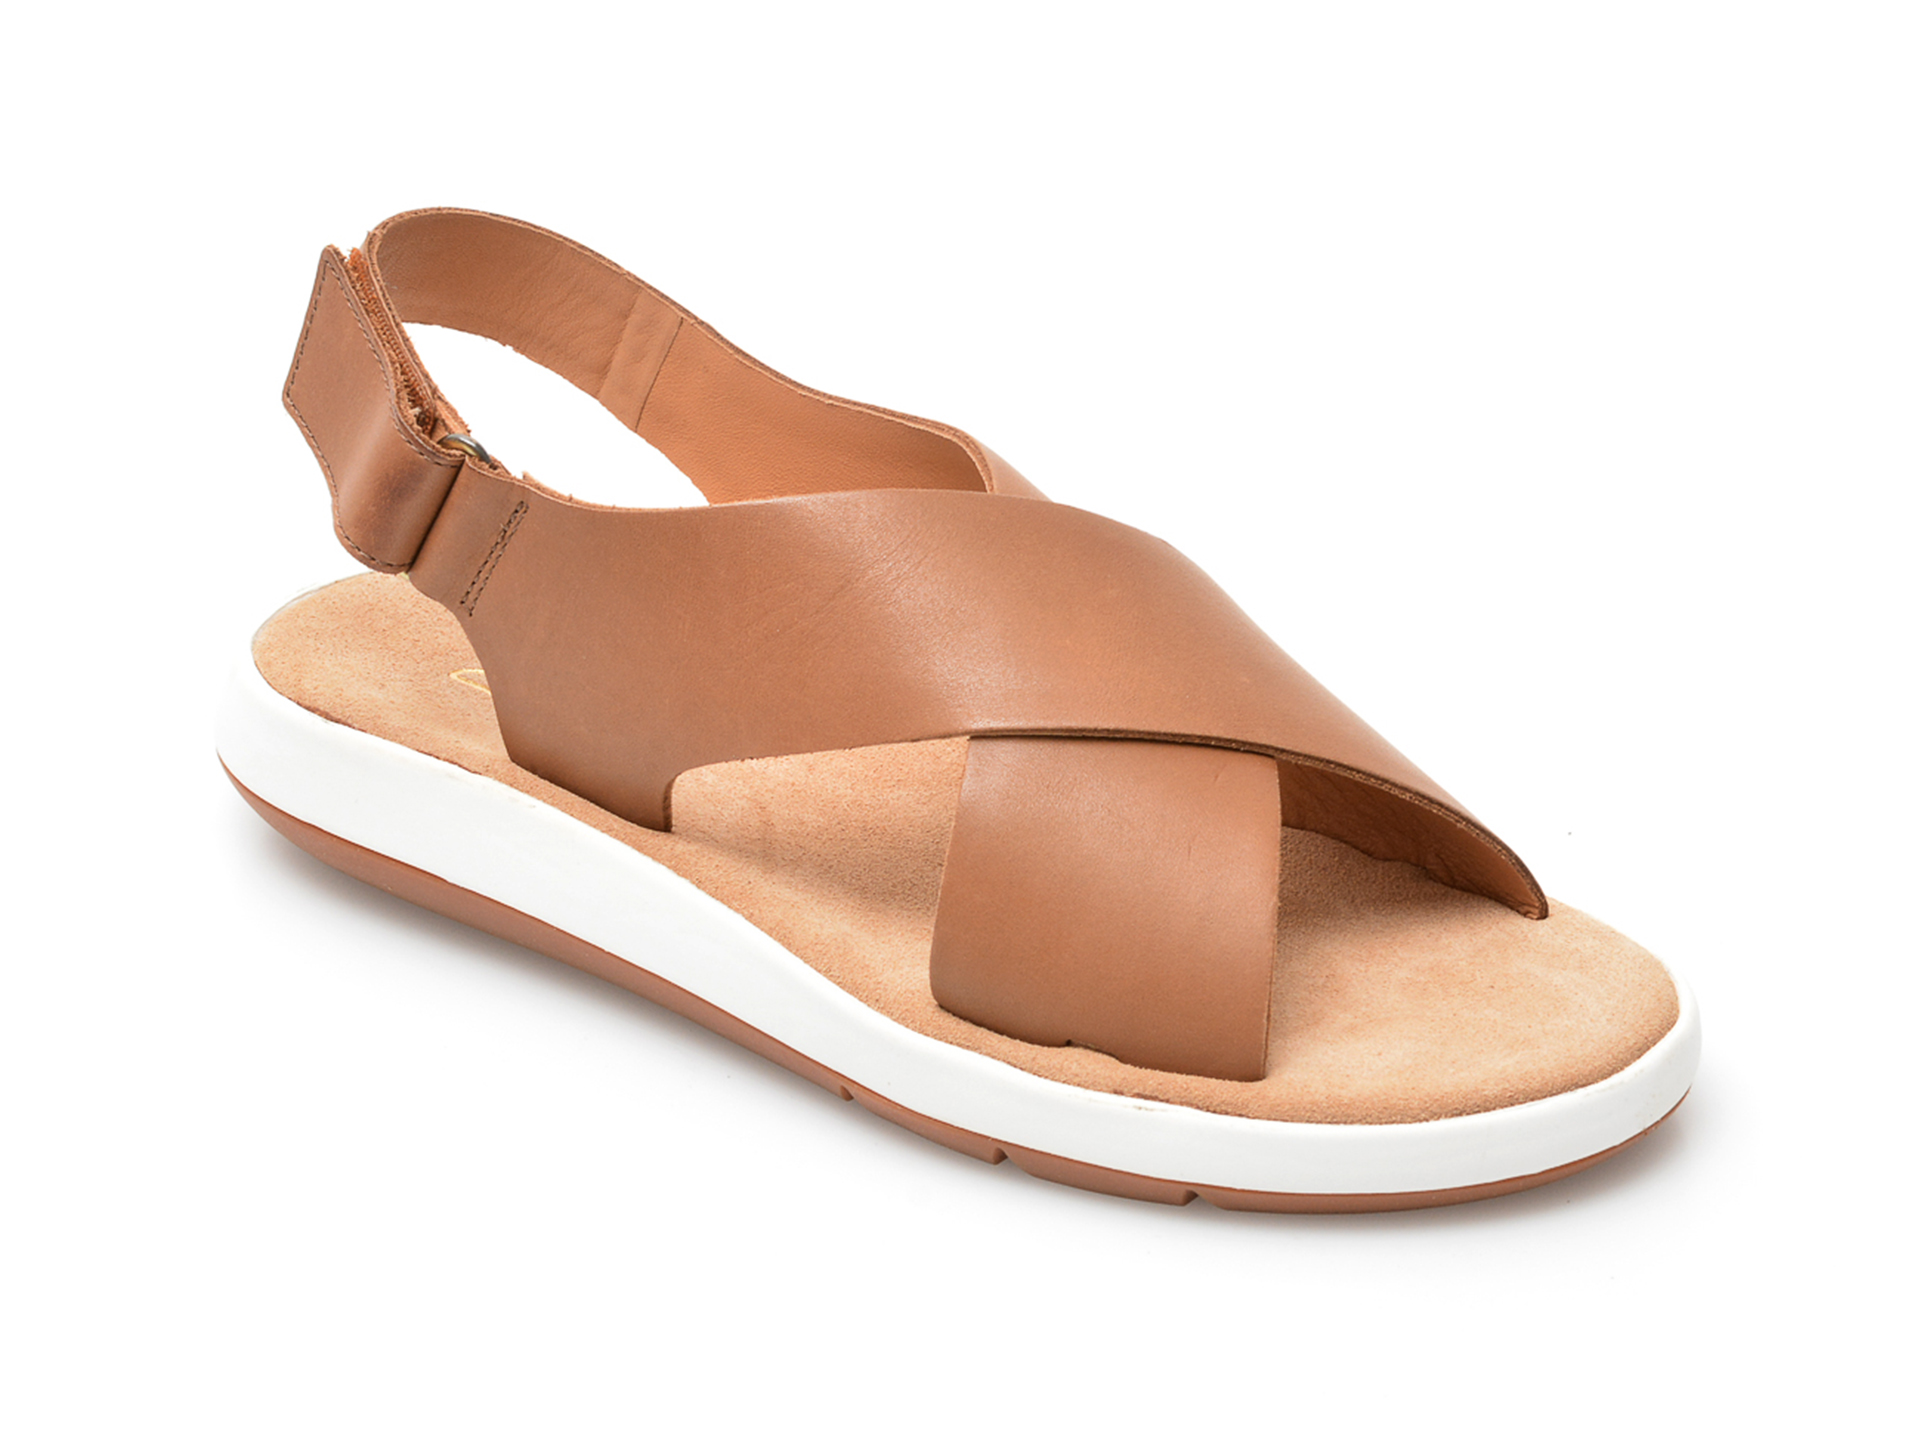 Sandale CLARKS maro, JEMSCRO, din piele naturala